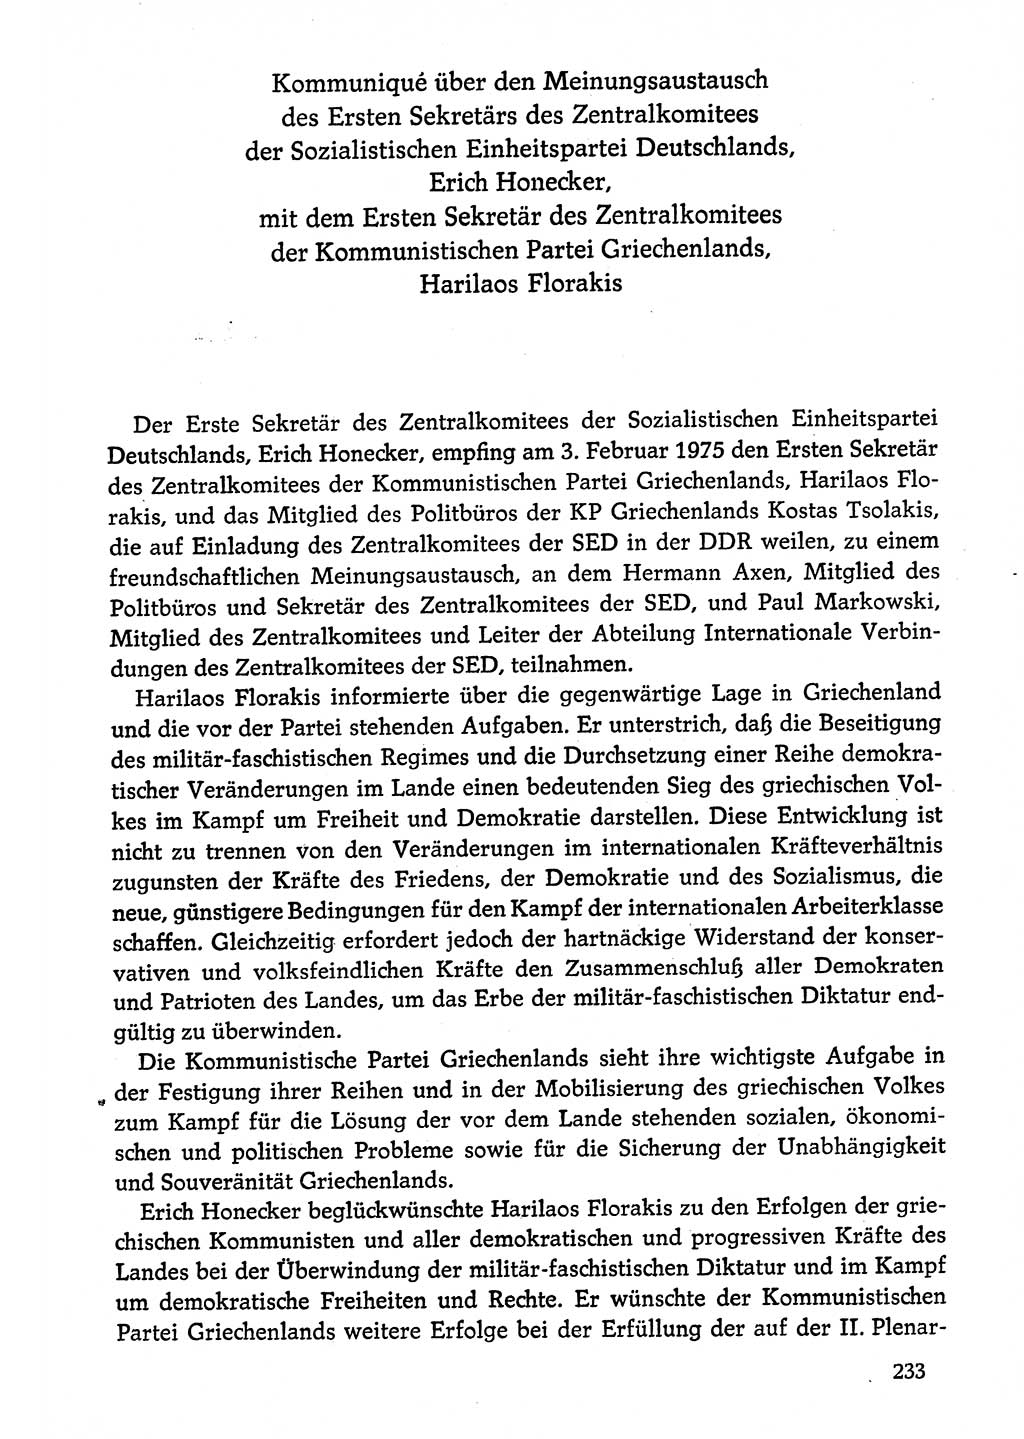 Dokumente der Sozialistischen Einheitspartei Deutschlands (SED) [Deutsche Demokratische Republik (DDR)] 1974-1975, Seite 233 (Dok. SED DDR 1978, Bd. â…©â…¤, S. 233)